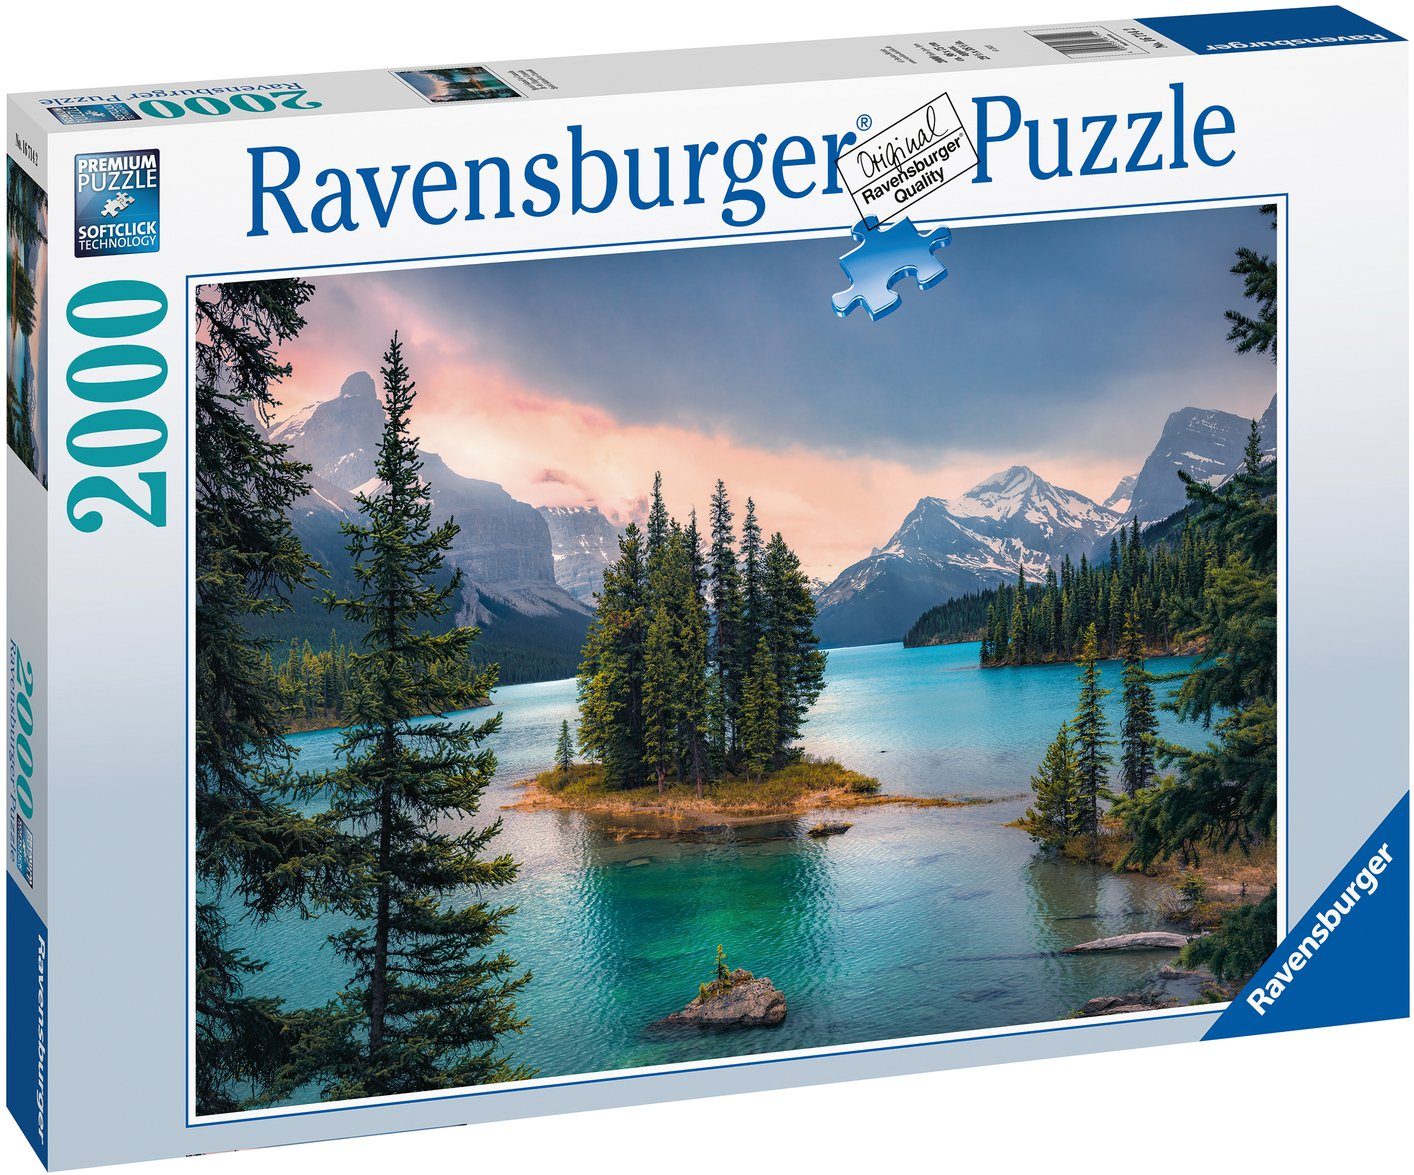 weltweit Spirit Puzzle 2000 FSC® Made Ravensburger schützt - - Canada, Germany, Puzzleteile, Island, in Wald